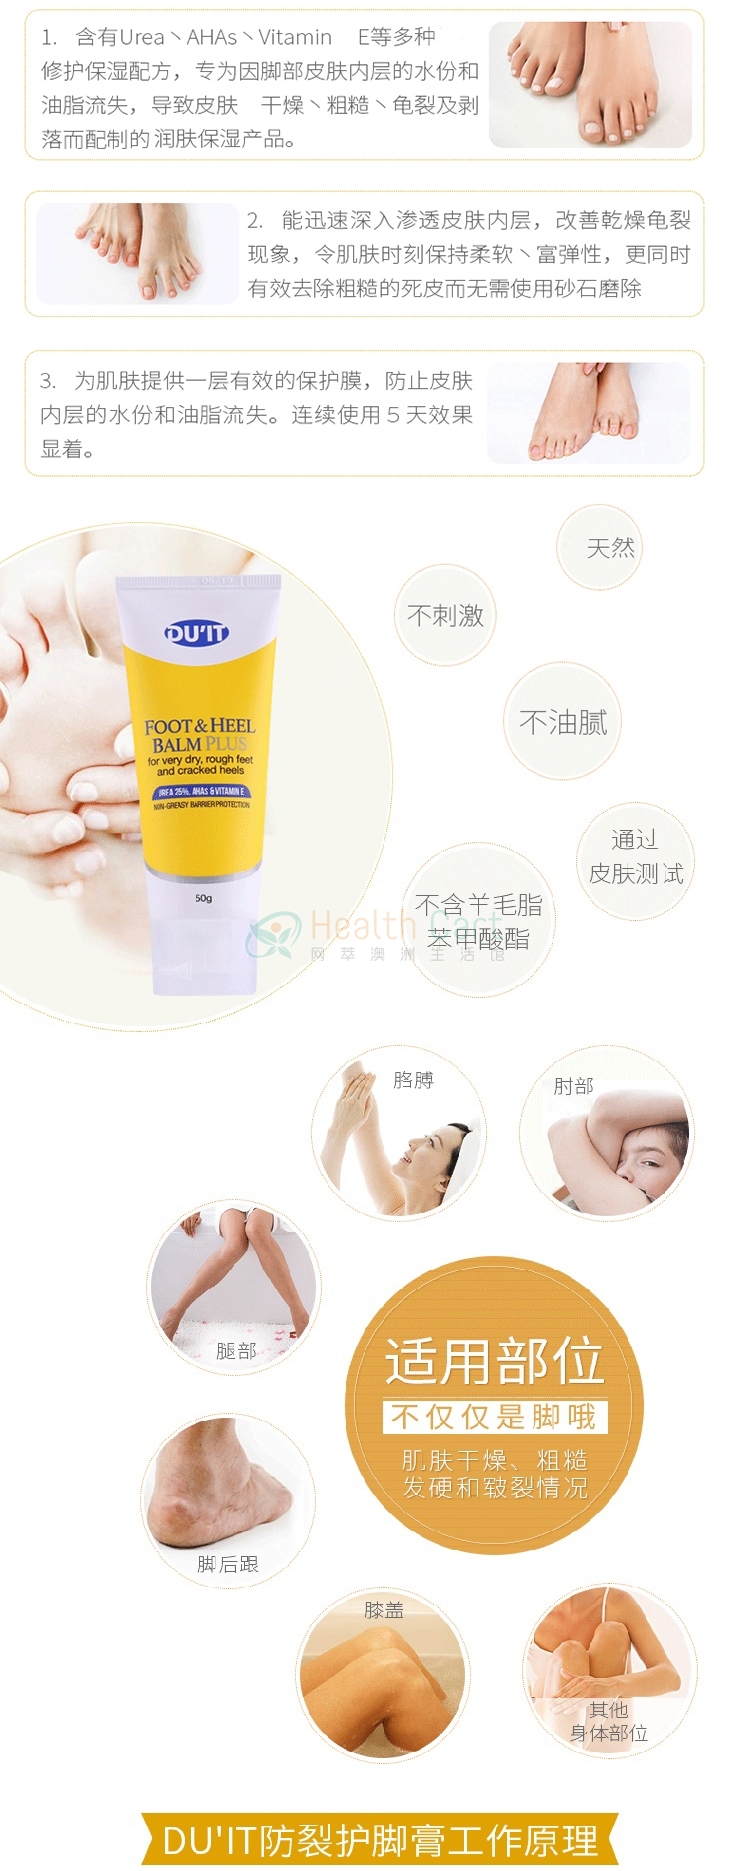 Du'it first aid Foot Cream - @duit first aid foot cream - 21 - Health Cart